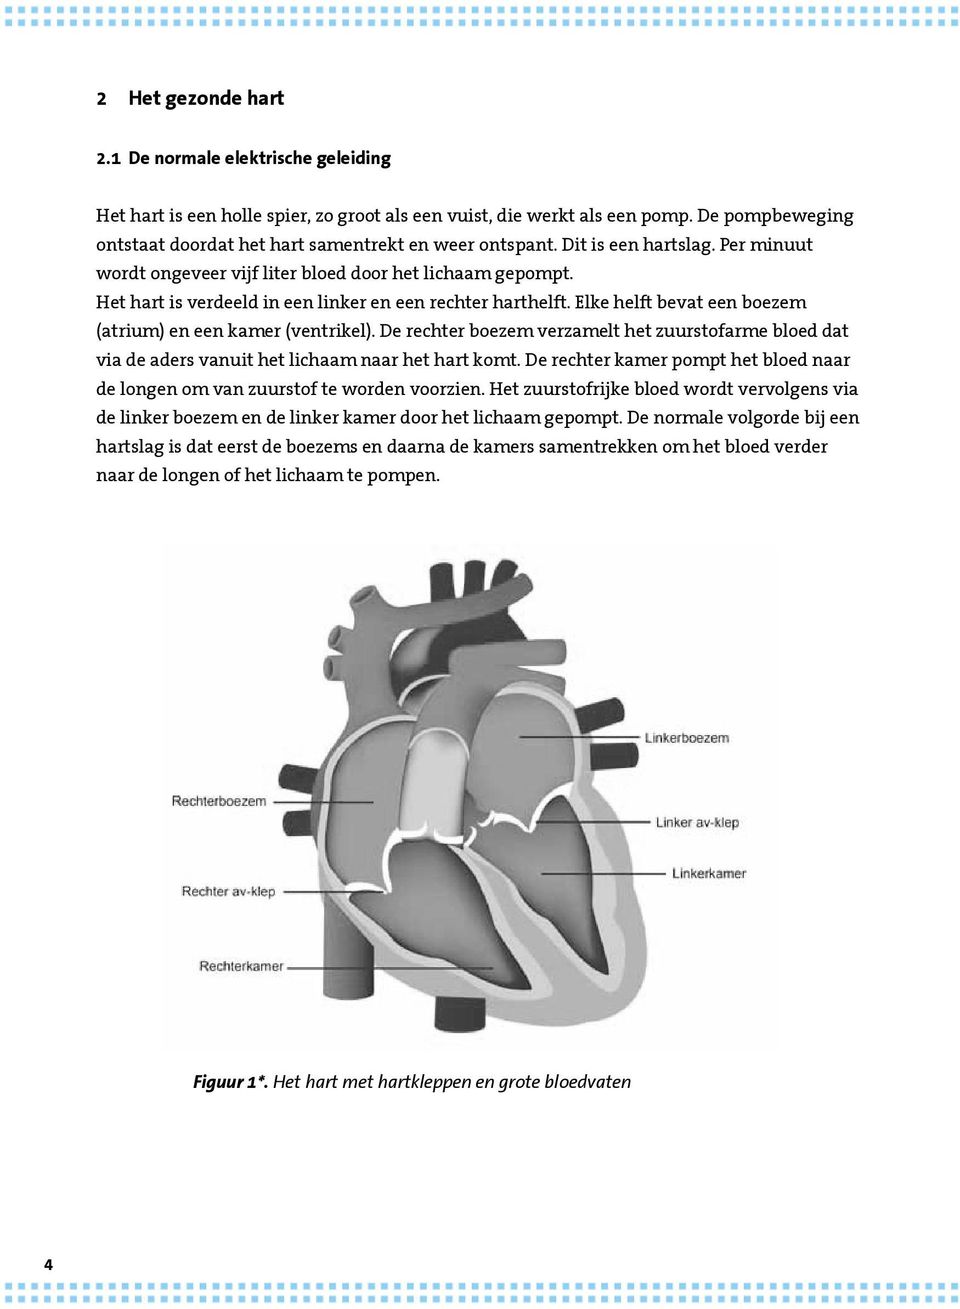 Het hart is verdeeld in een linker en een rechter harthelft. Elke helft bevat een boezem (atrium) en een kamer (ventrikel).